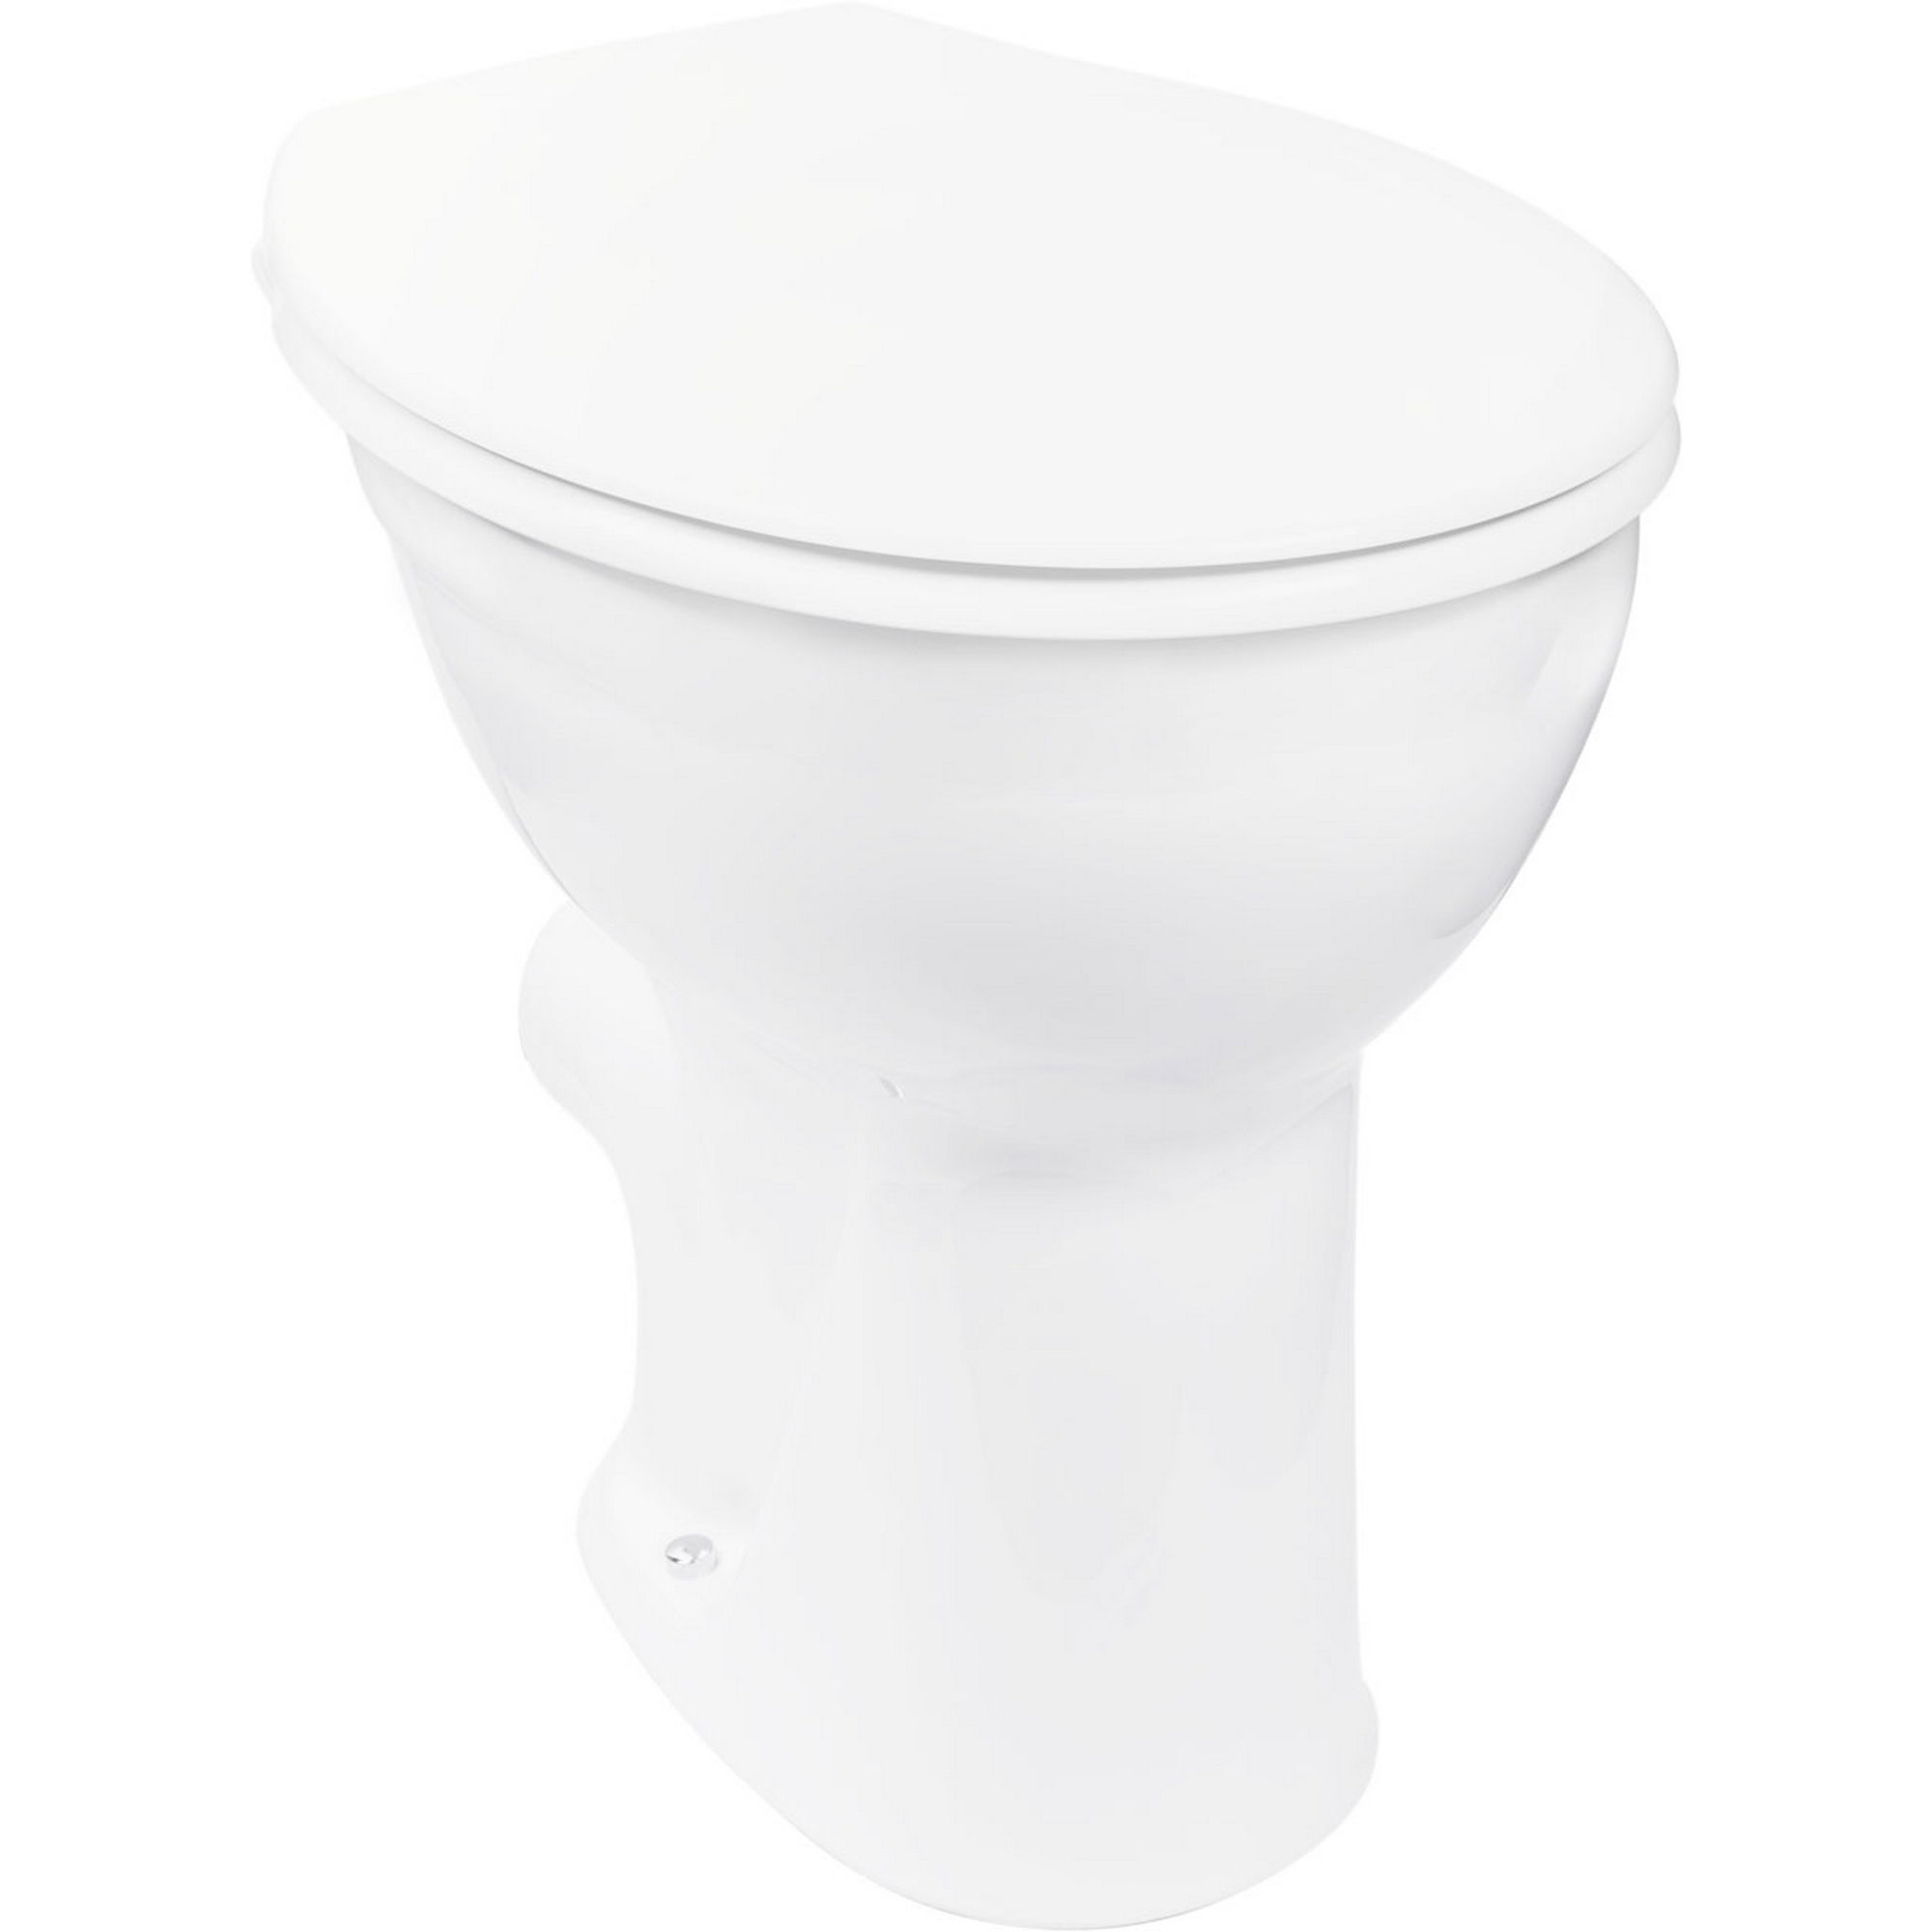 SOLO Stand-Tiefspül-WC weiss mit Spülrand Toilette Klosett Abbort Klo 